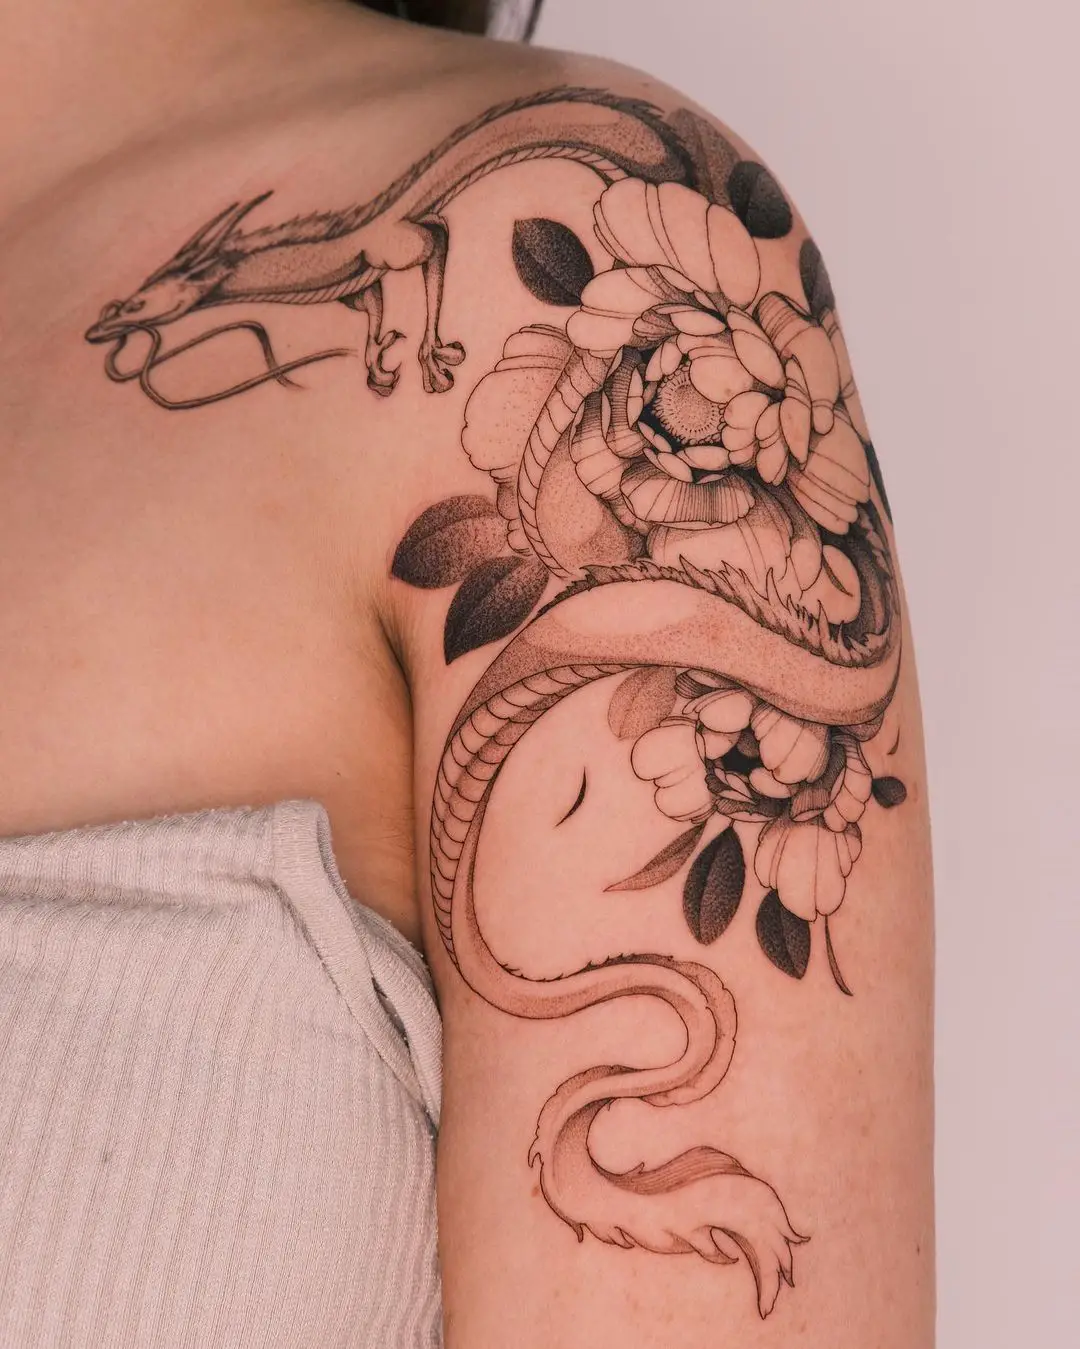 Realistic Dragon tattoo by kimbobby ttt